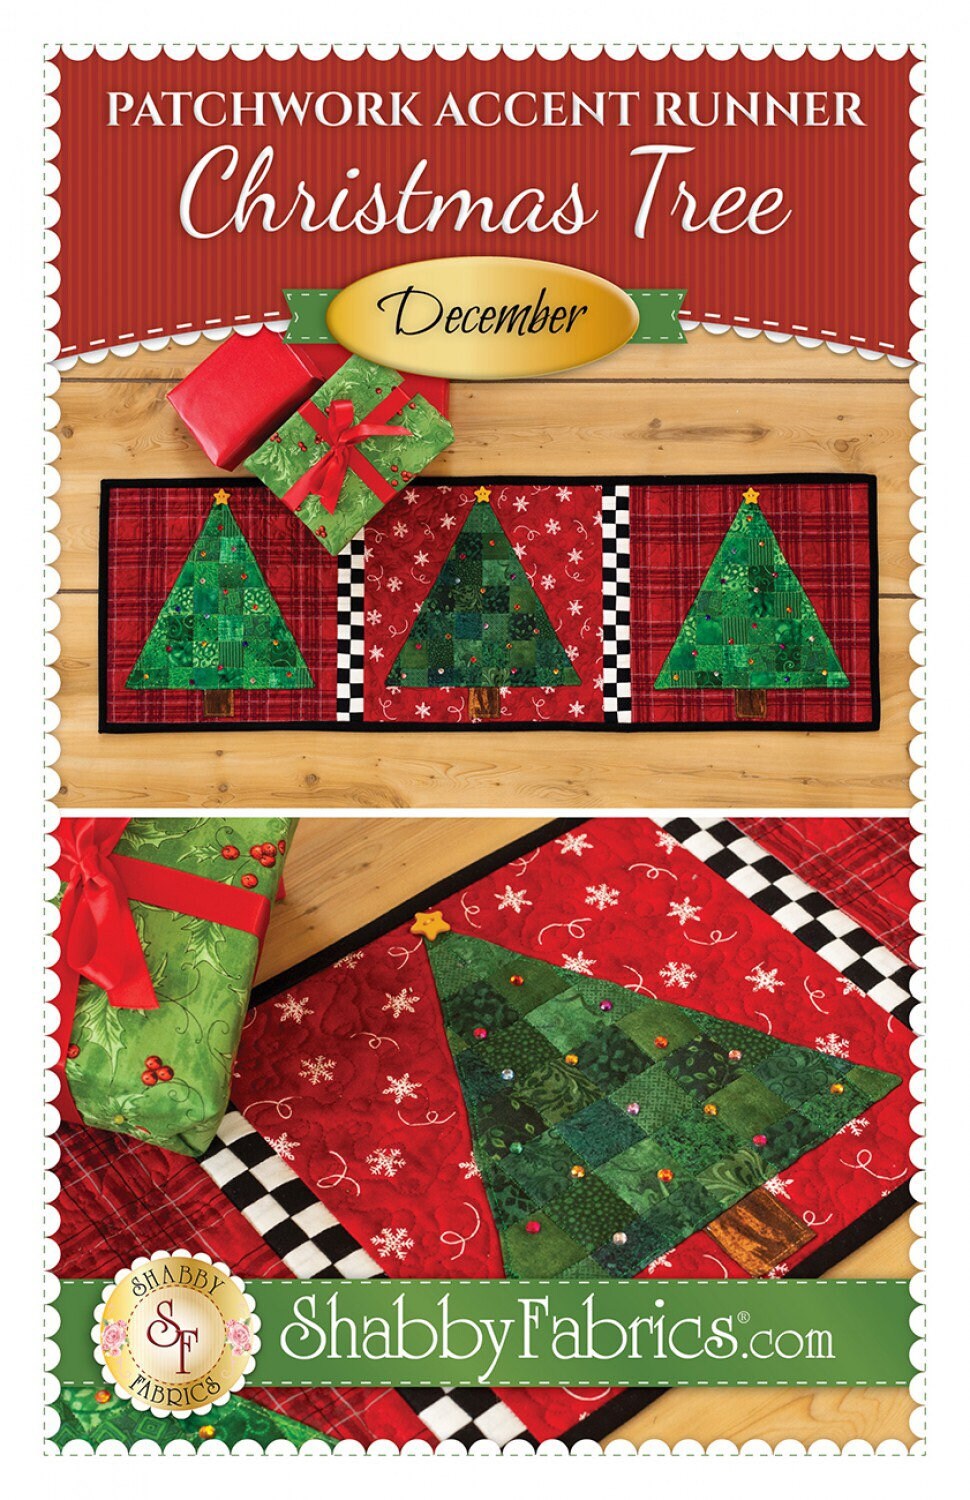 Patchwork Accent Runner Christmas Trees December - Shabby Fabrics - Jennifer Bosworth - Christmas Table Runner Pattern